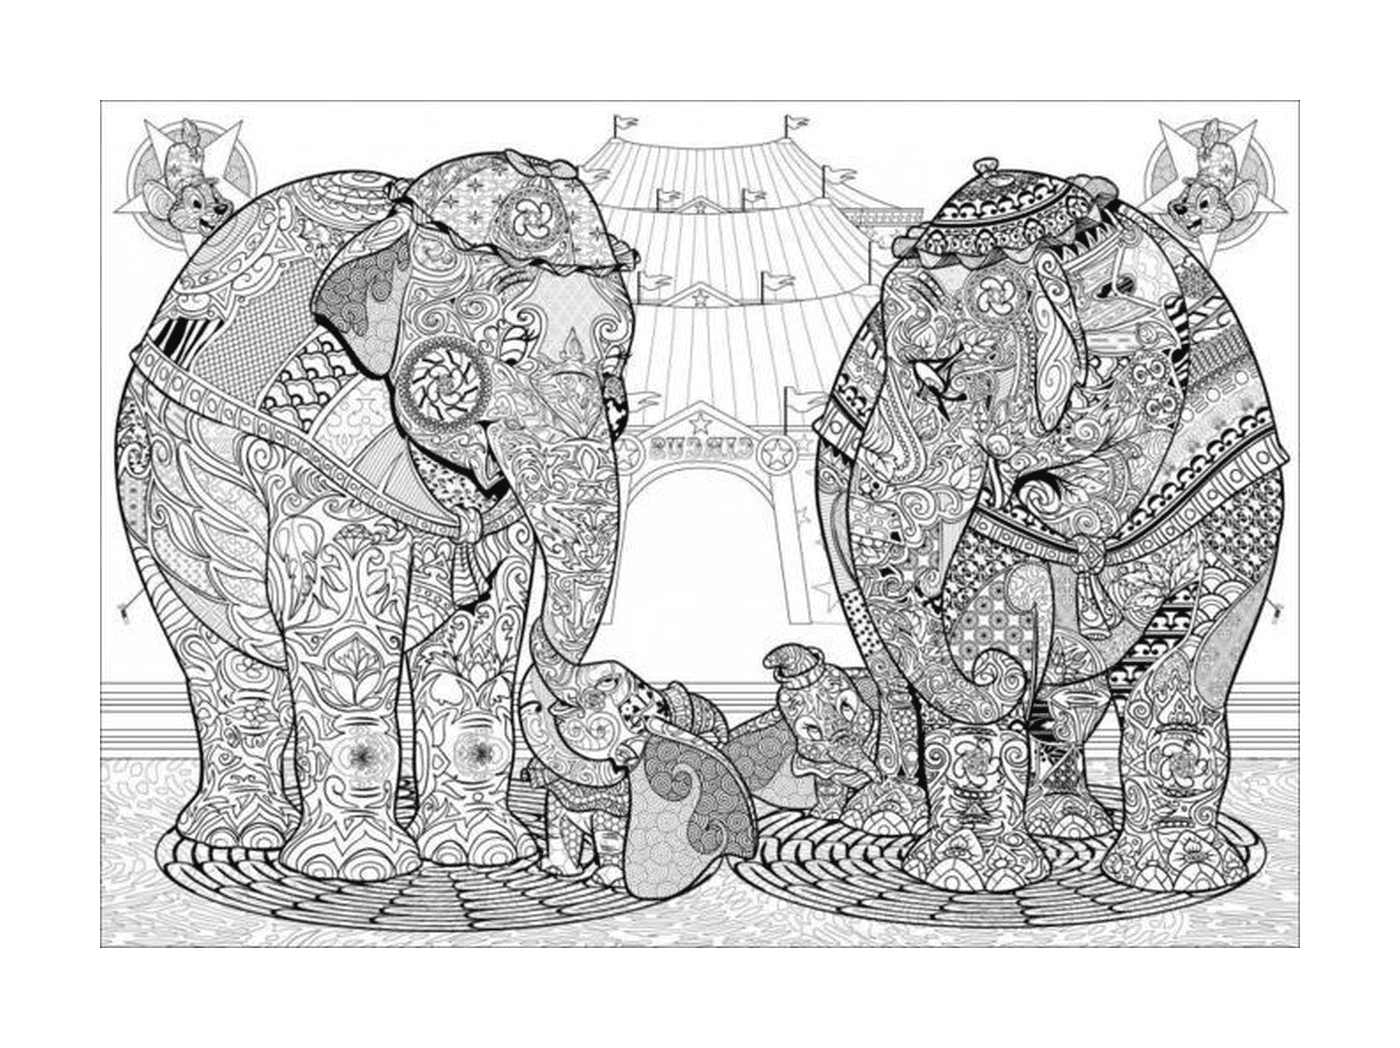  हाथी साथ - साथ खड़े होते हैं 